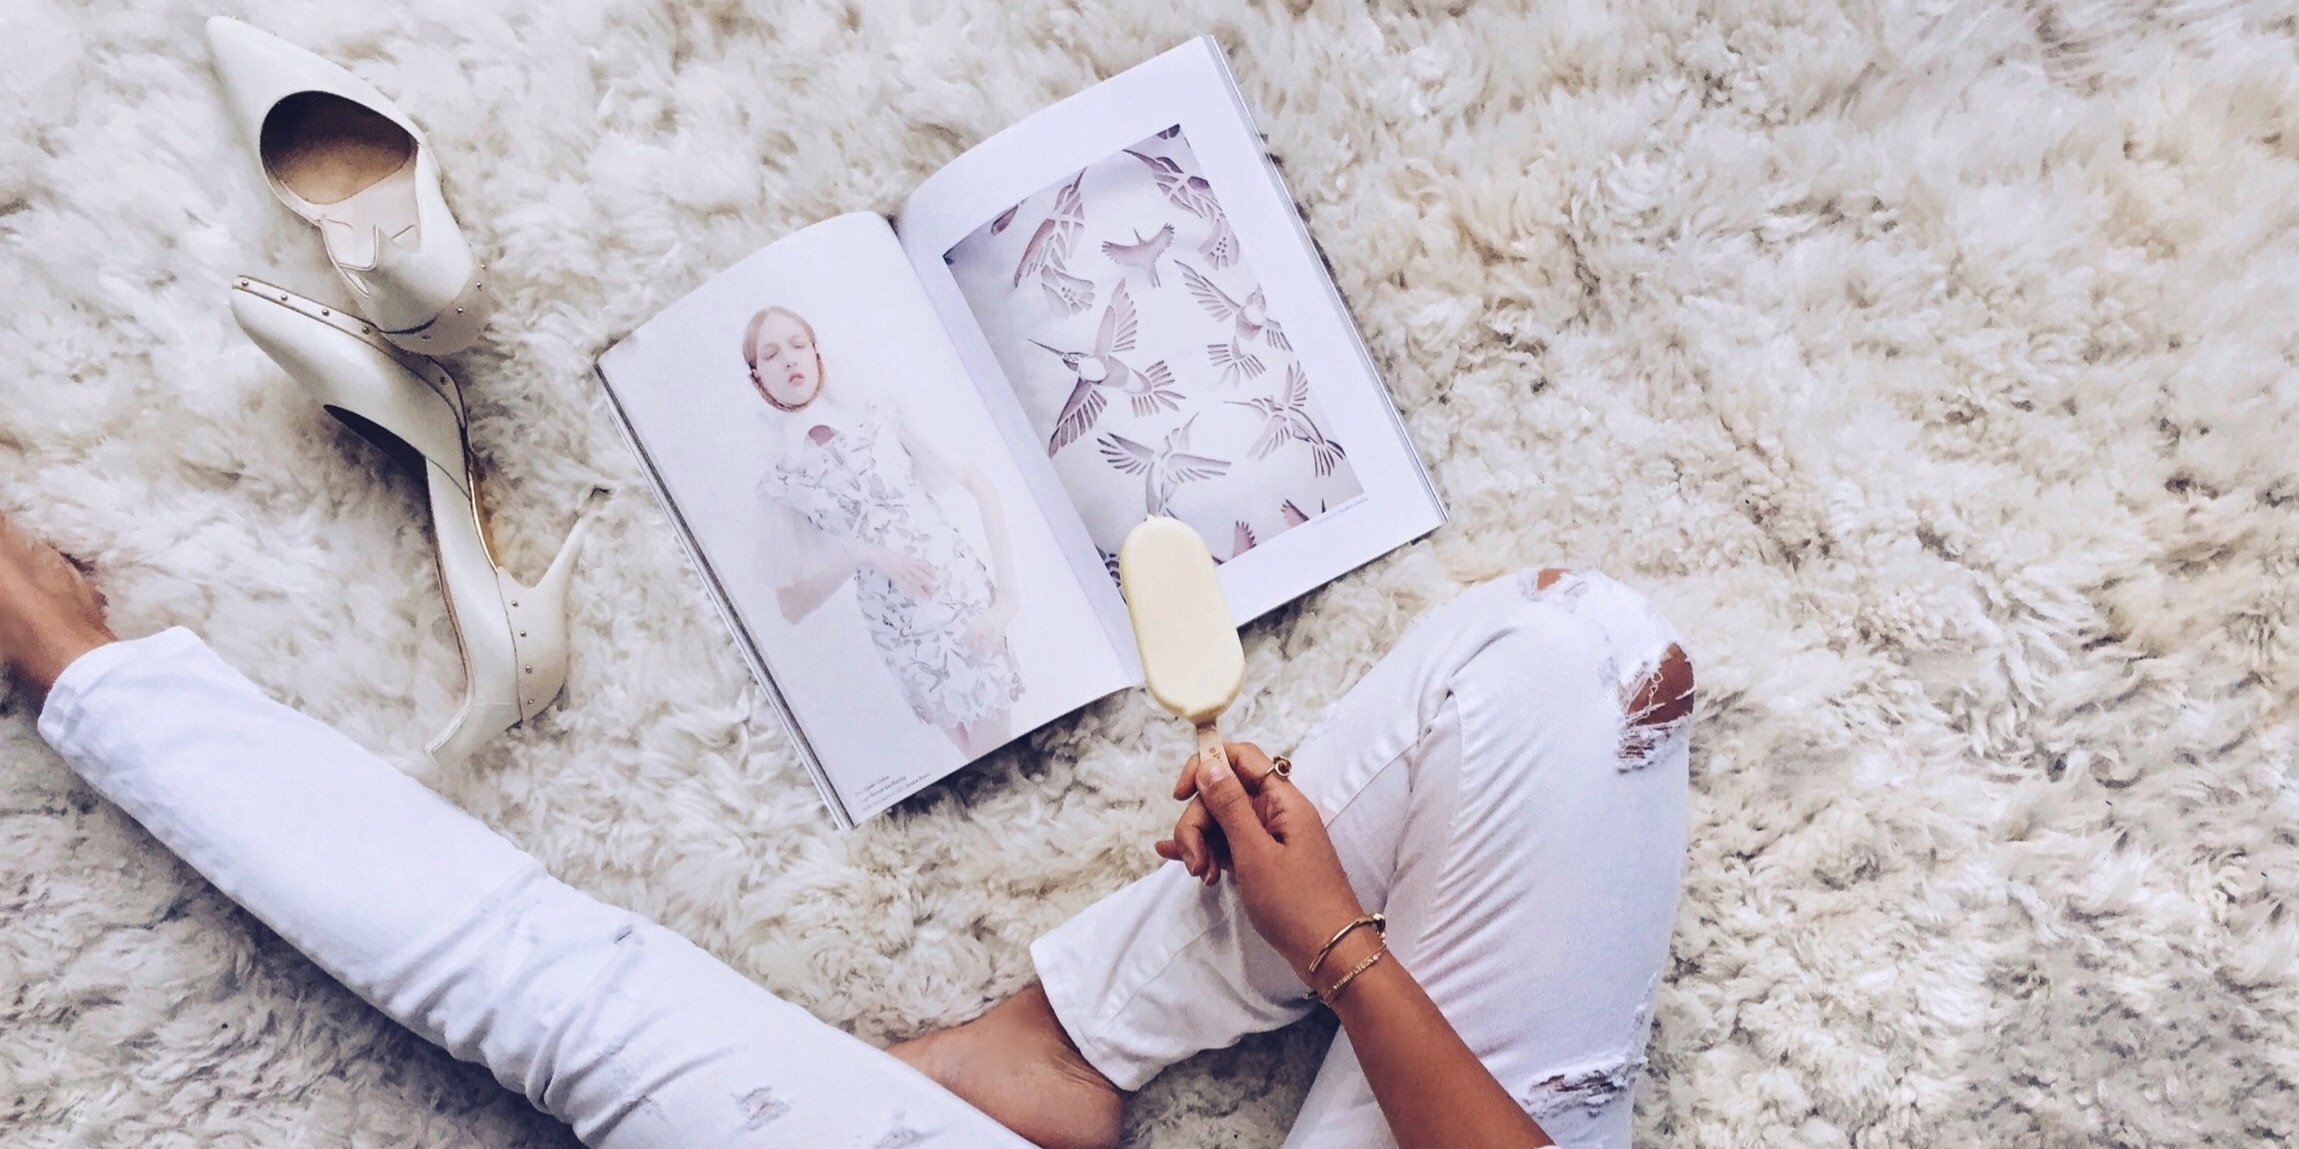  รูปหญิงสาวนั่งถือไอศกรีมแม็กนั่ม ไวท์ อัลมอนด์ และหน้านิตยสาร Text